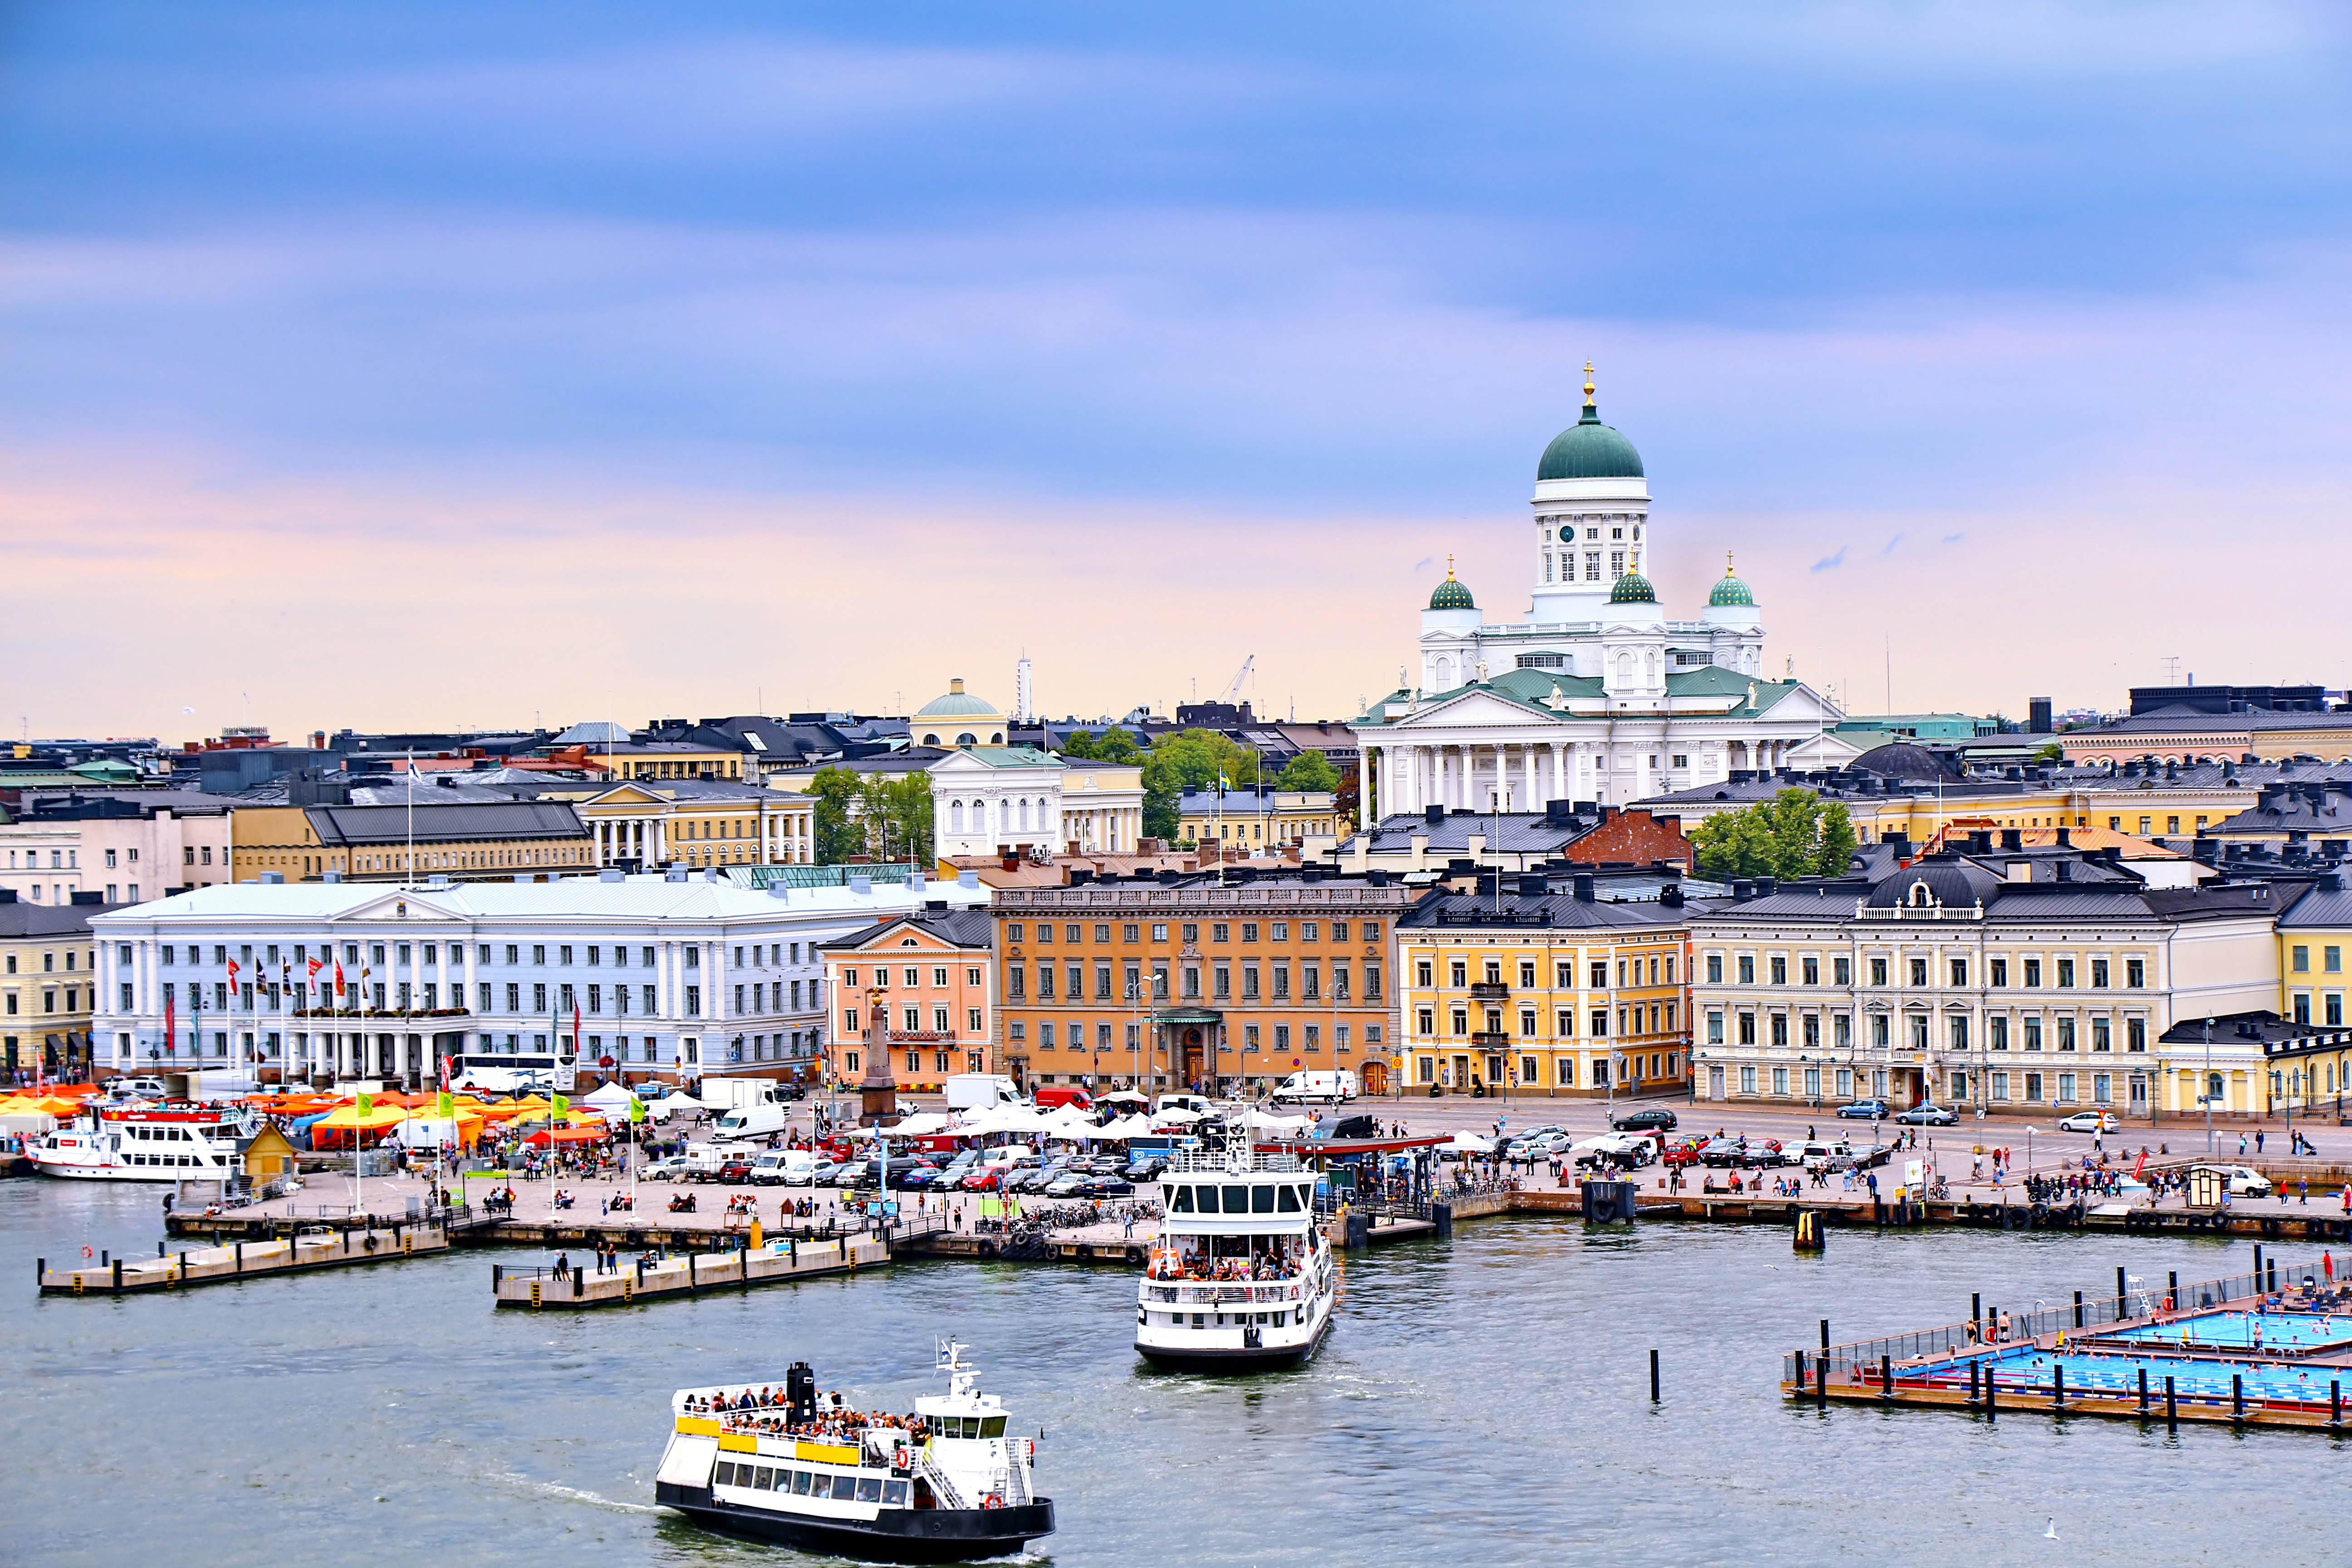 Хельсинки, столица Финляндии, ПМЖ которой могут получить иностранцы